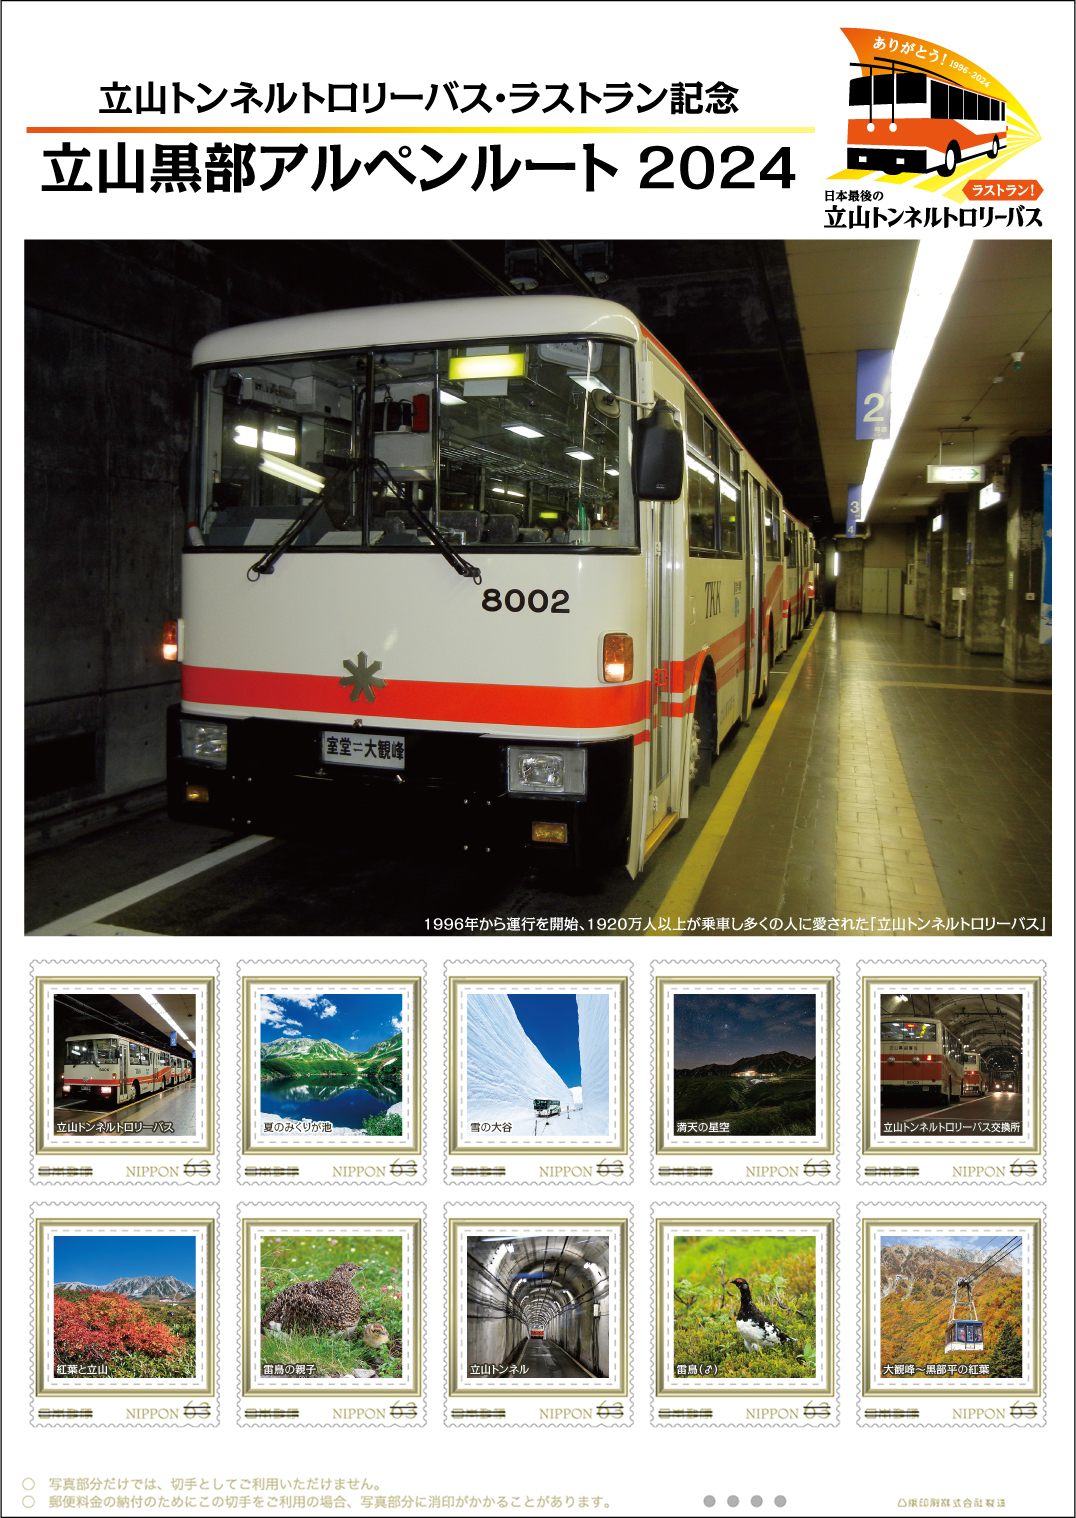 オリジナル フレーム切手「立山トンネルトロリーバス・ラストラン記念　立山黒部アルペンルート 2024」の販売開始